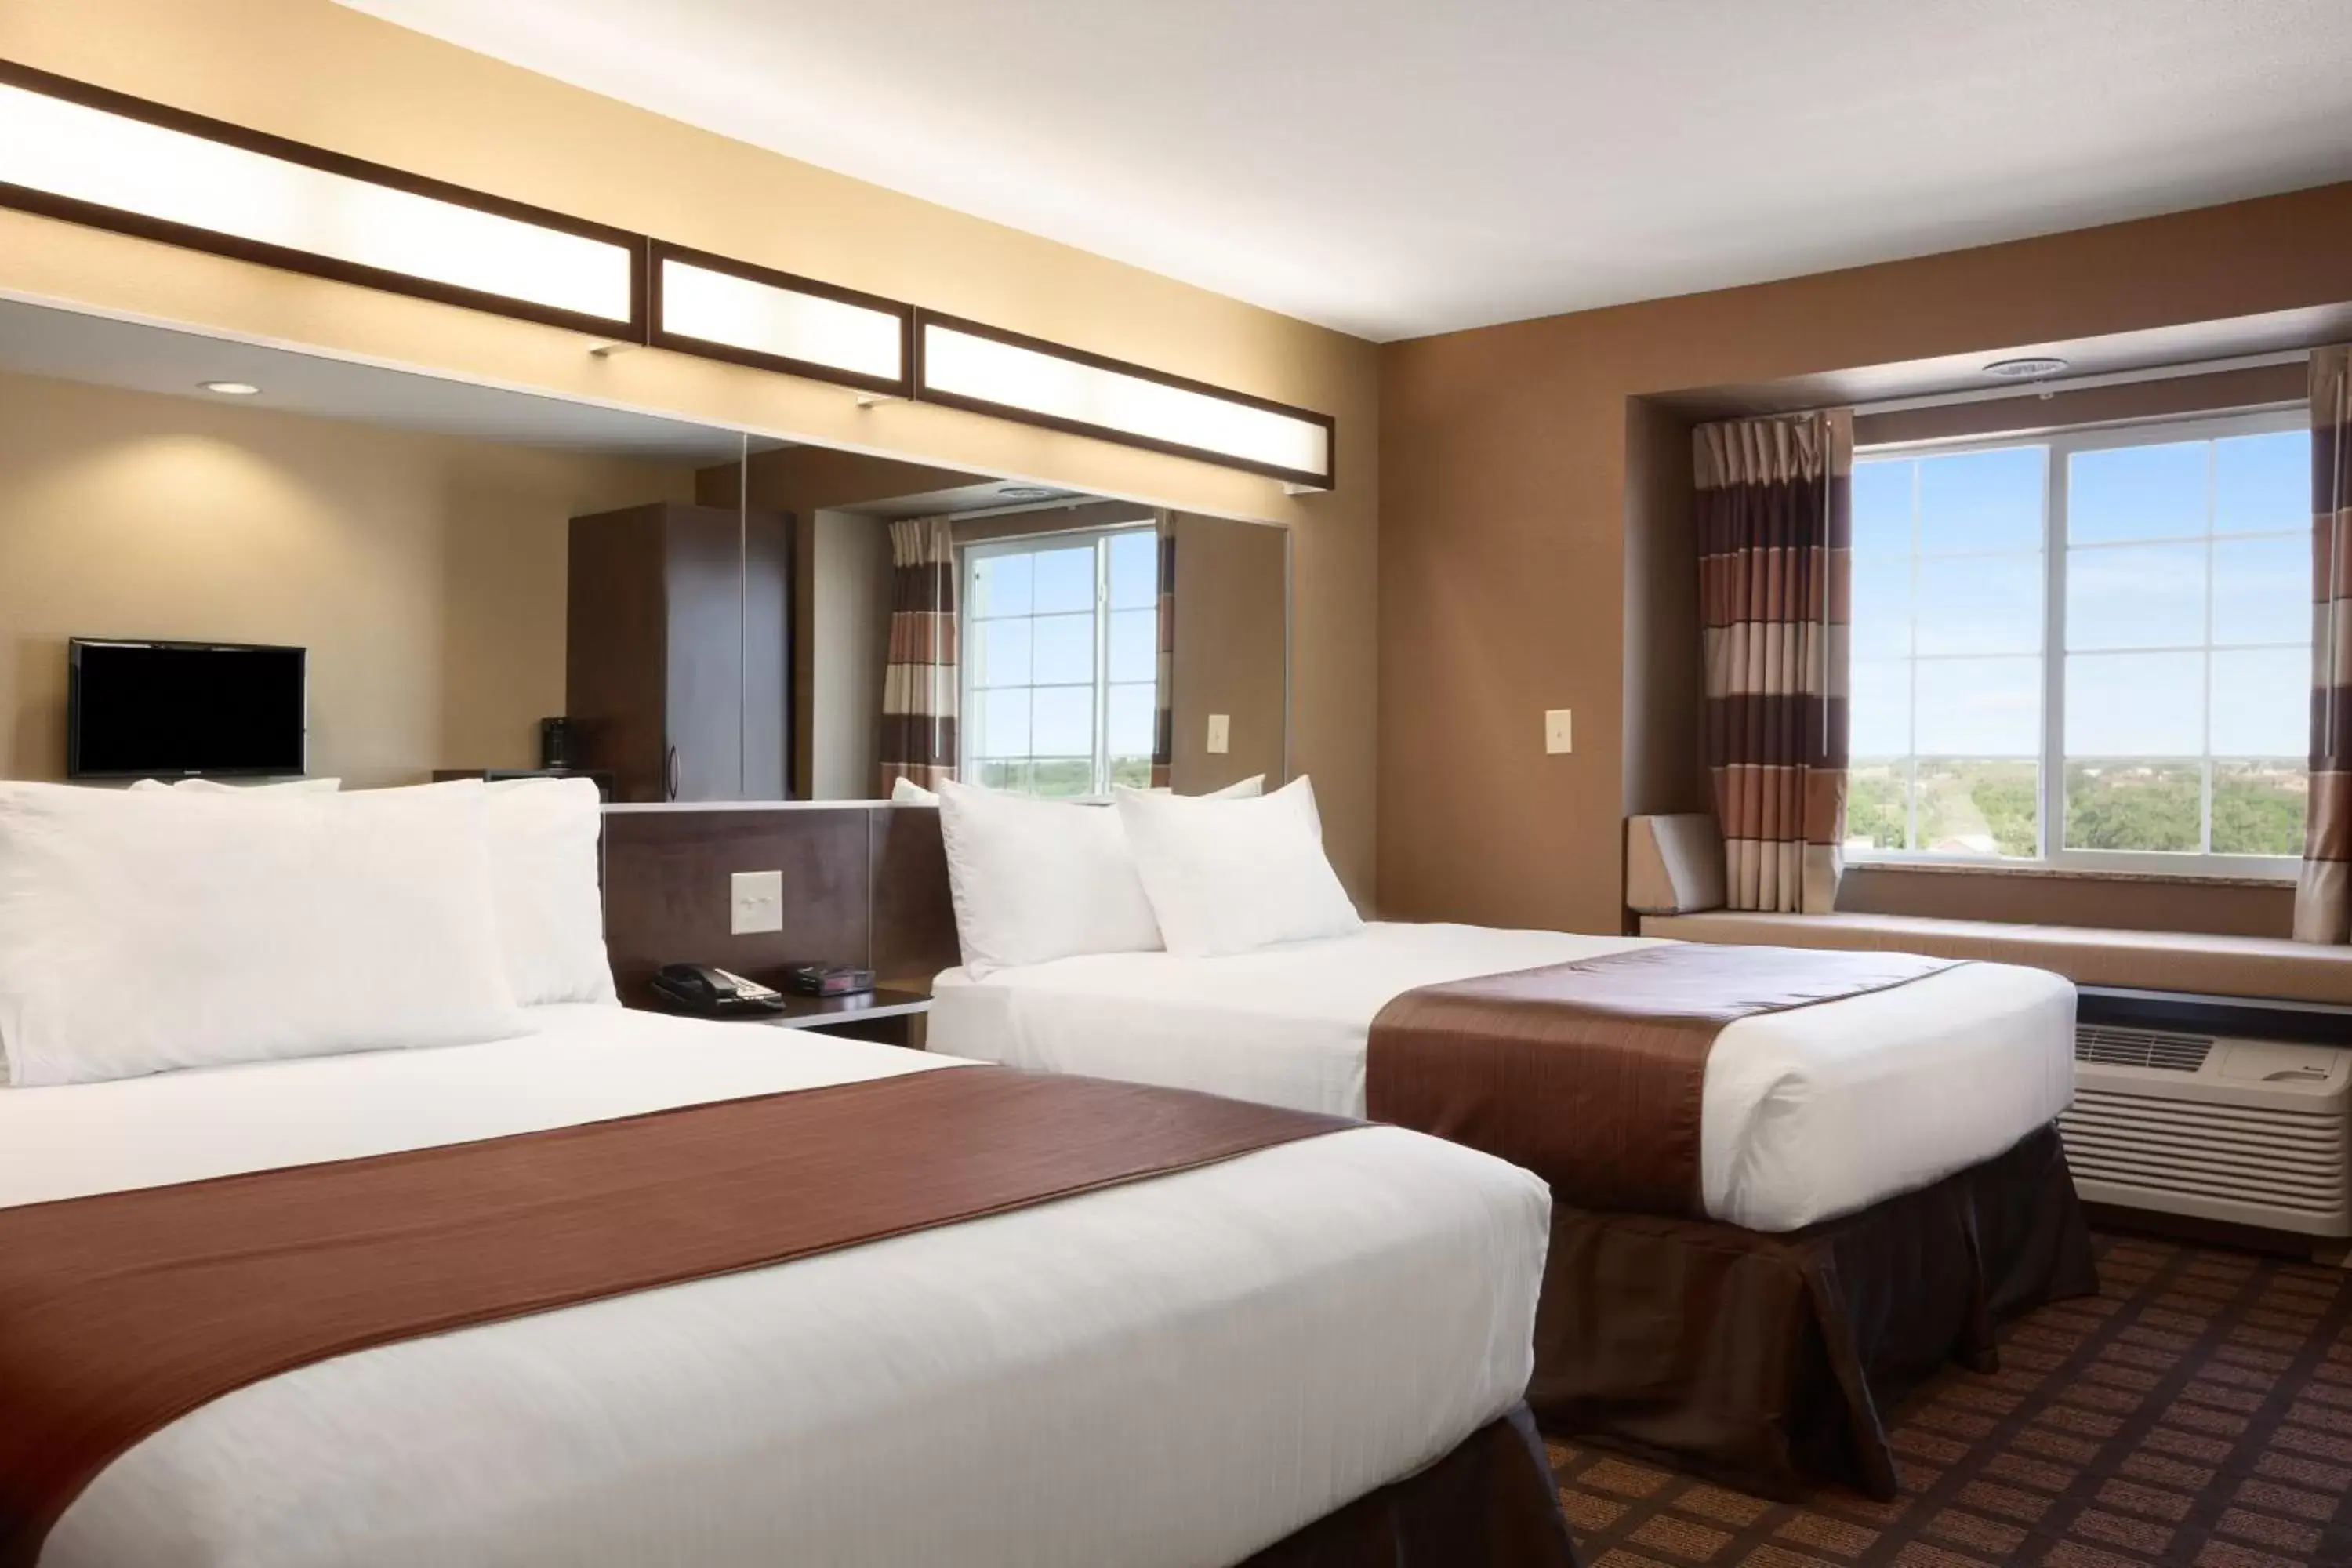 Bed in Microtel Inn & Suites Pleasanton